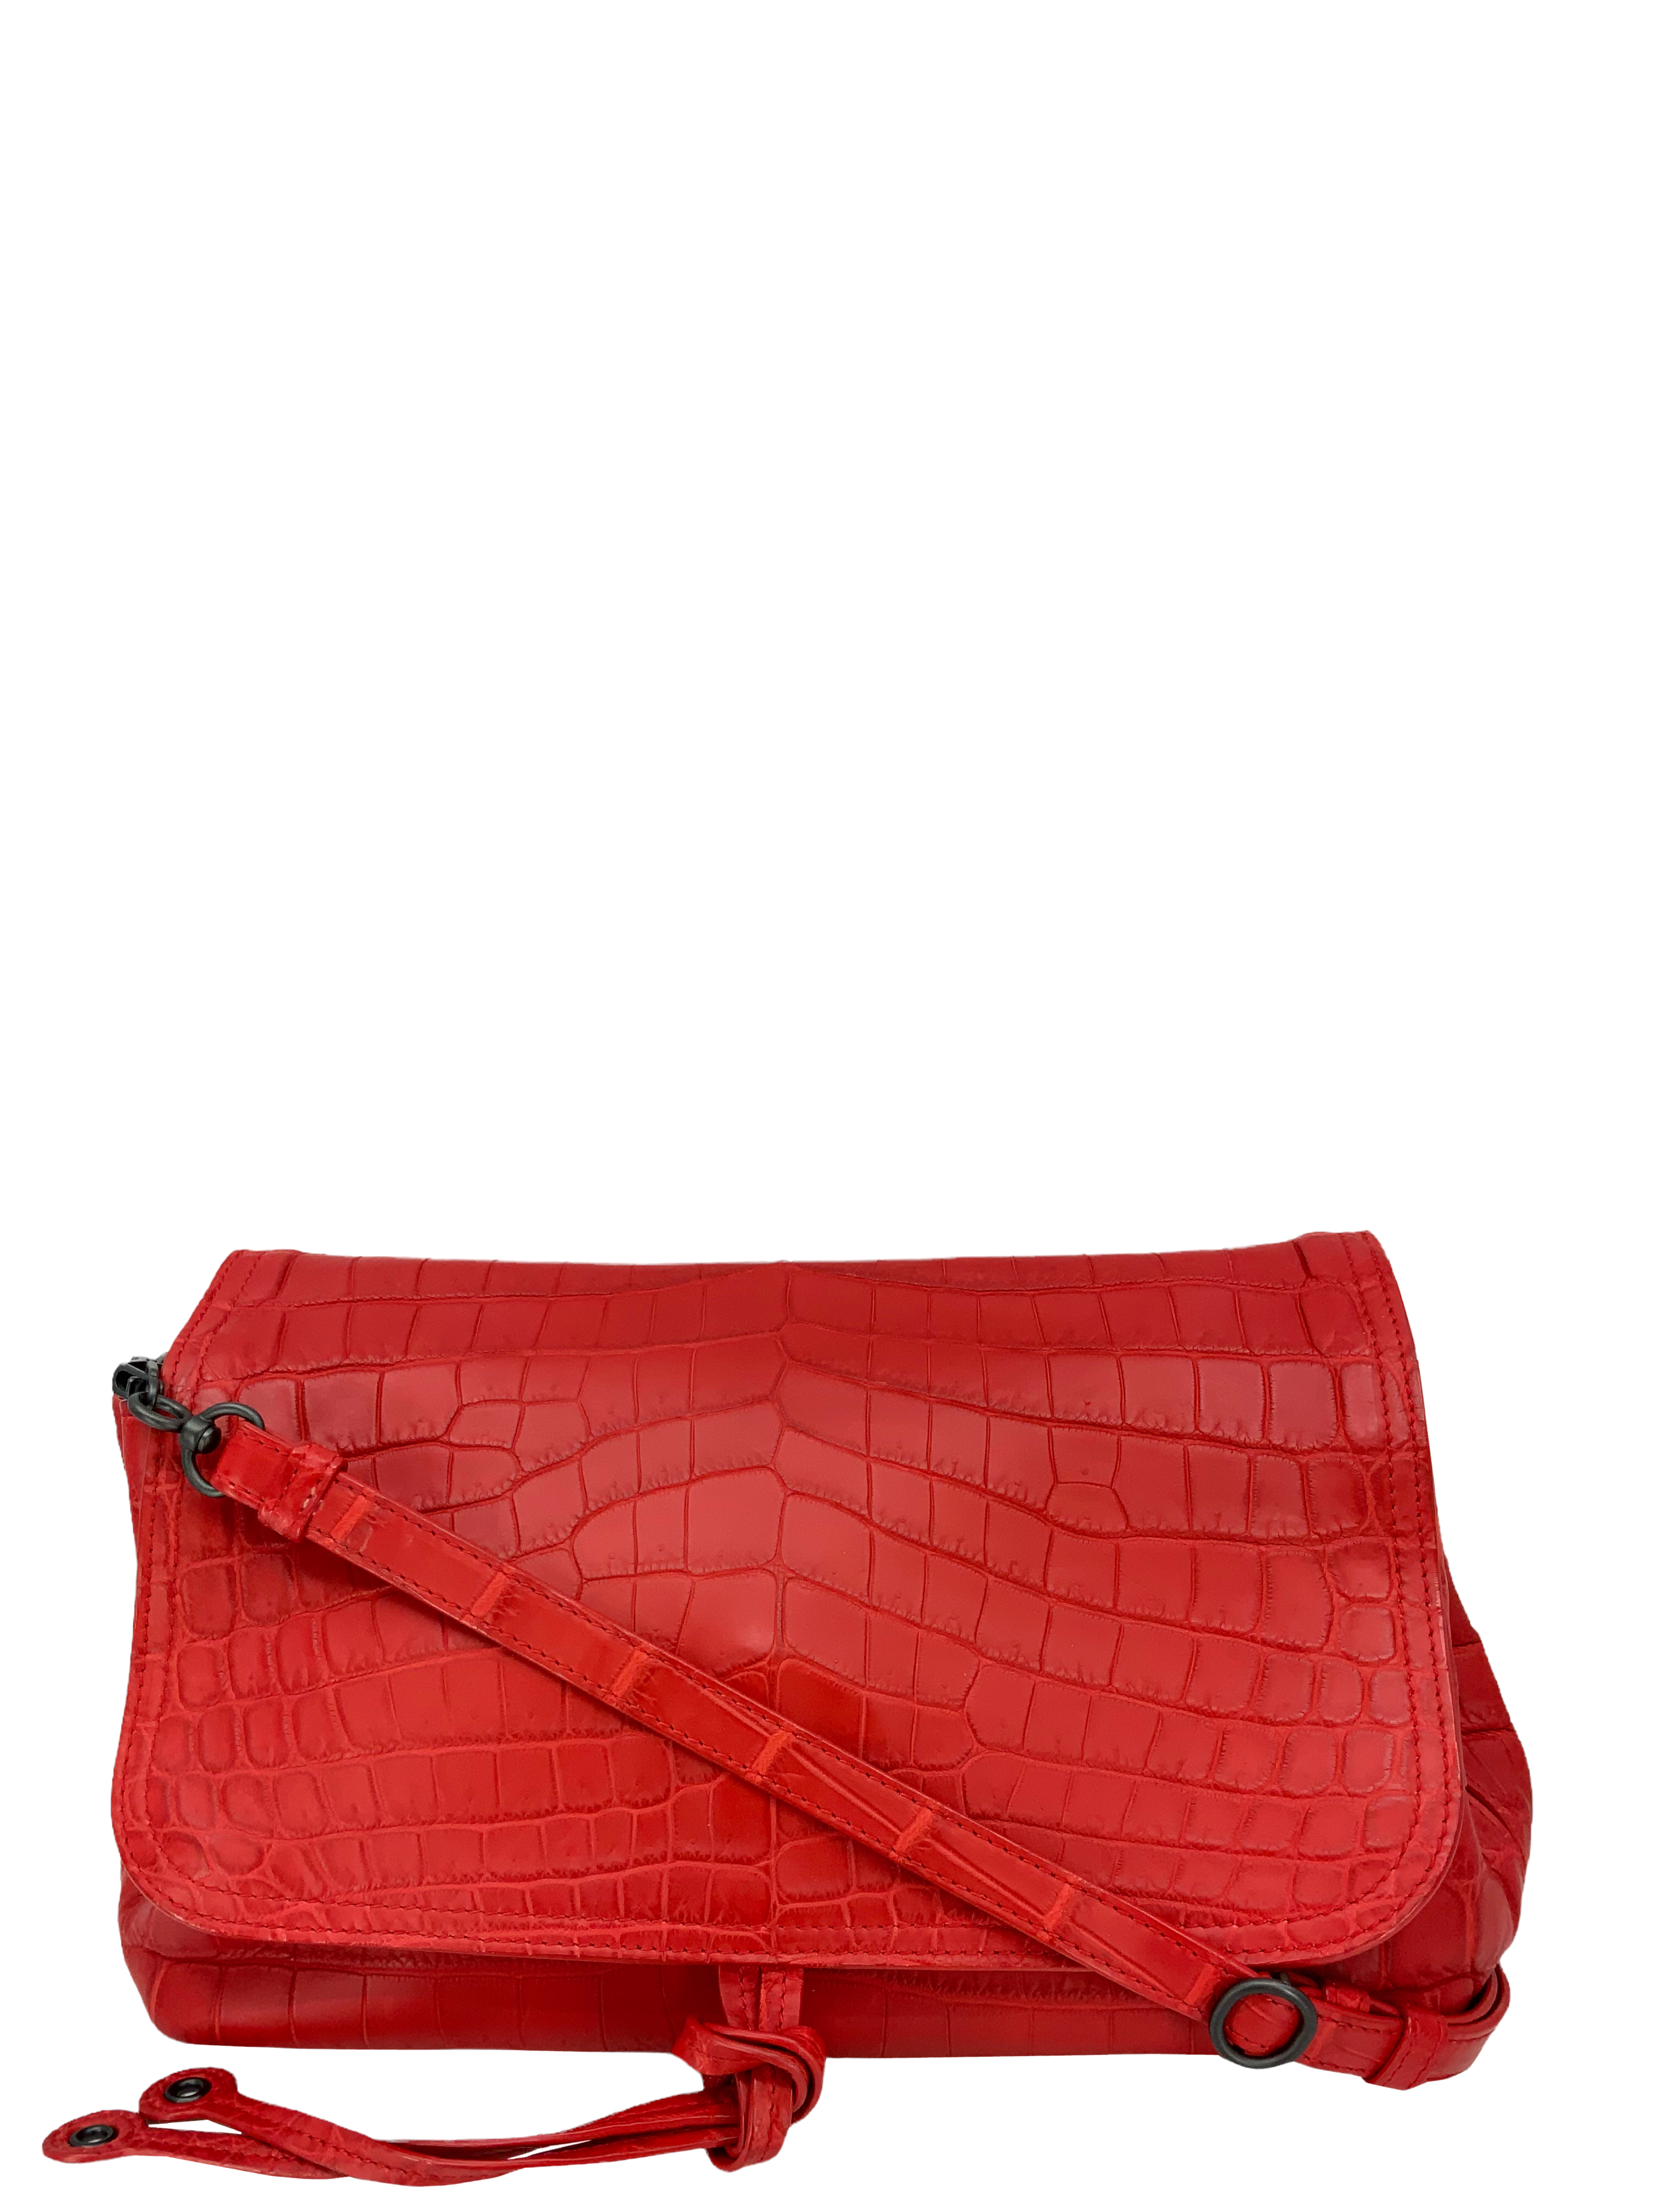 Crocodile Bag, Croc Embossed Leather Purse